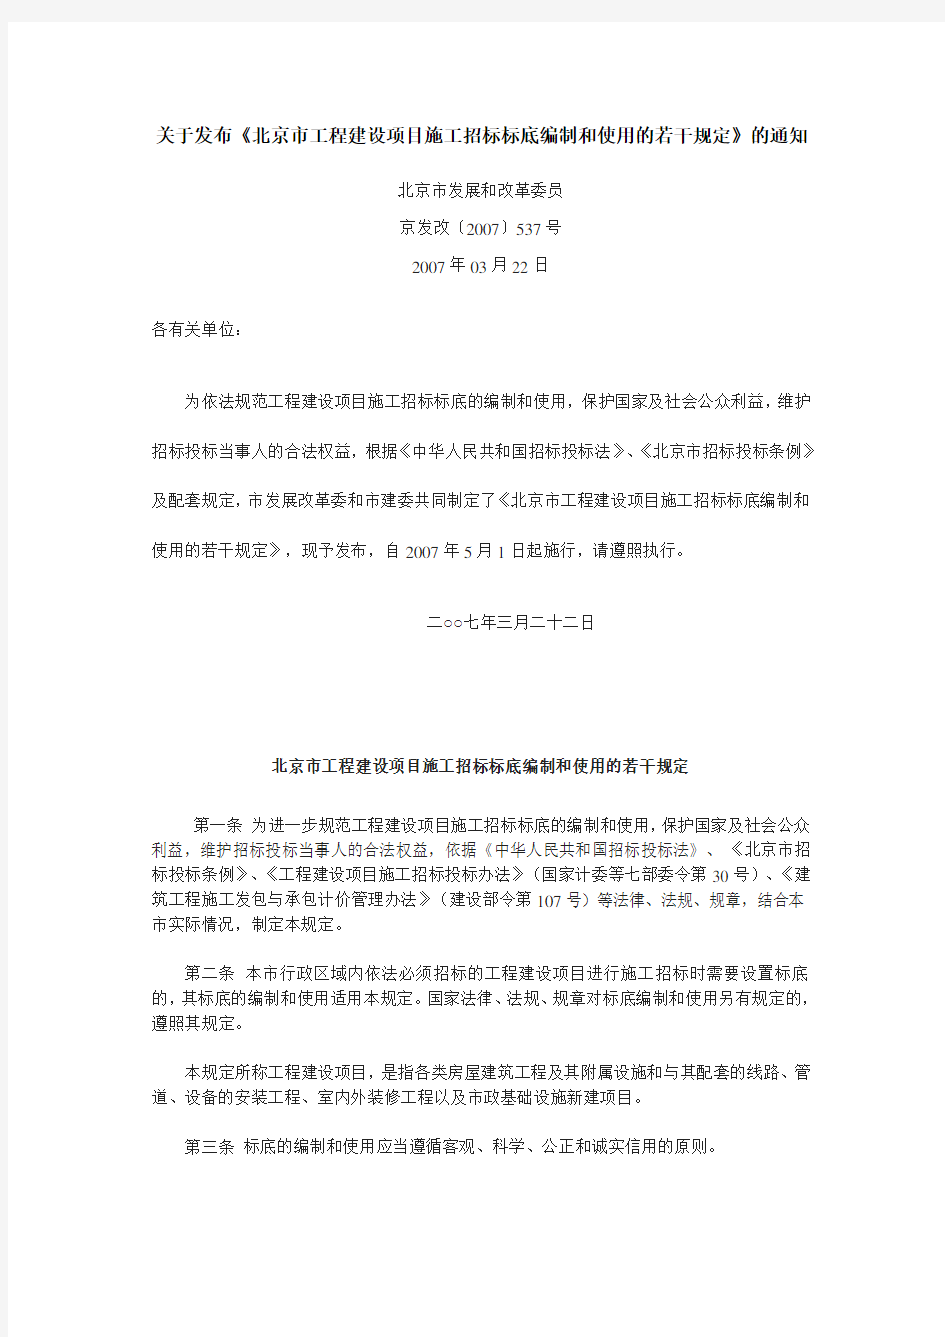 京发改〔2007〕537号《北京市工程建设项目施工招标标底编制和使用的若干规定》